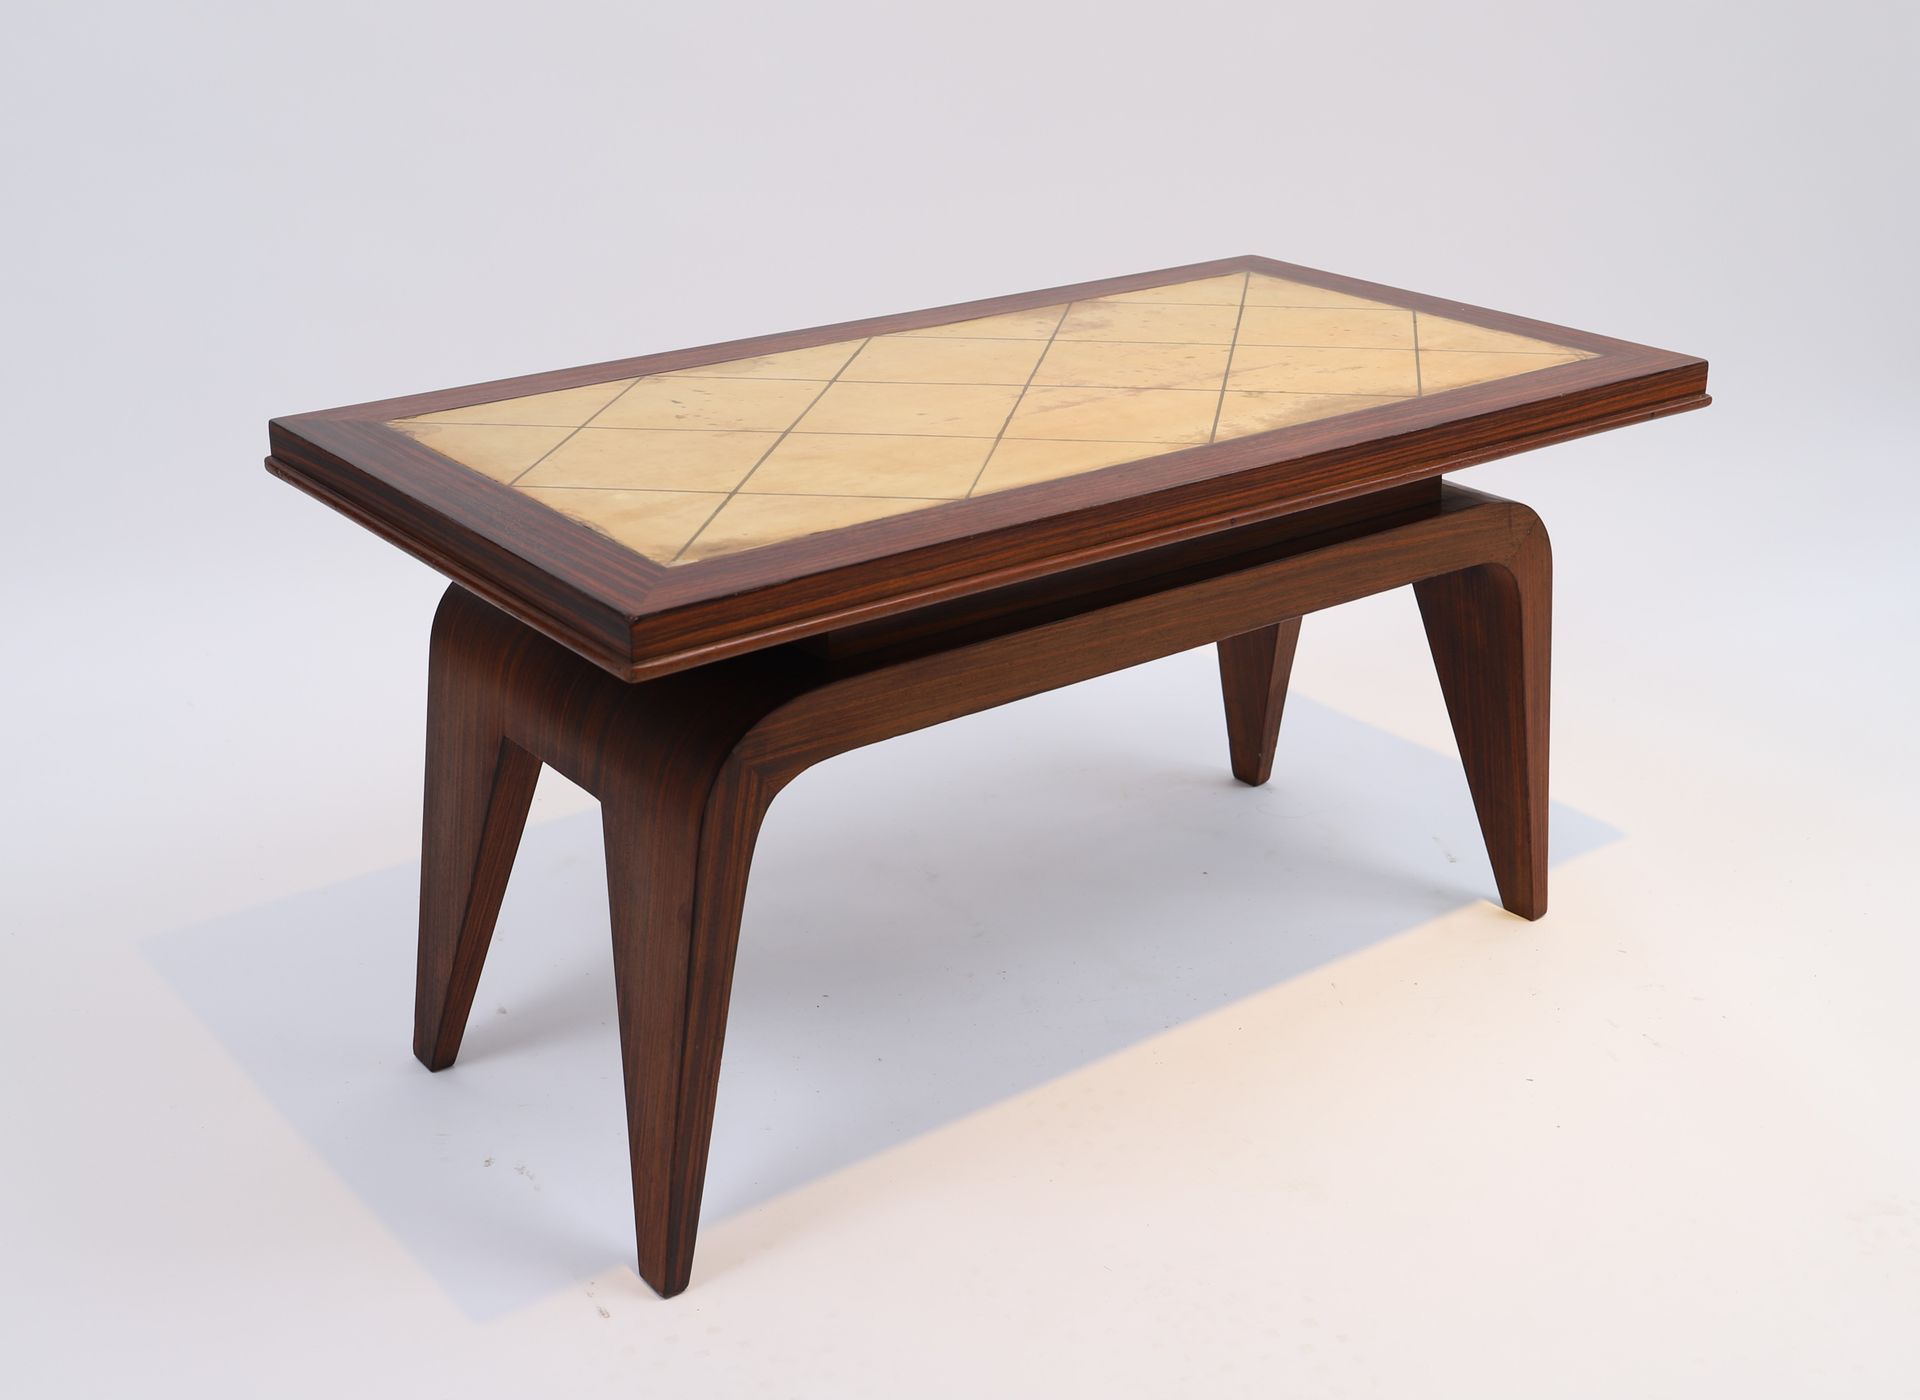 Null Tavolino di Christian Krass (1868-1957) - Lione

In palissandro su 4 gambe &hellip;